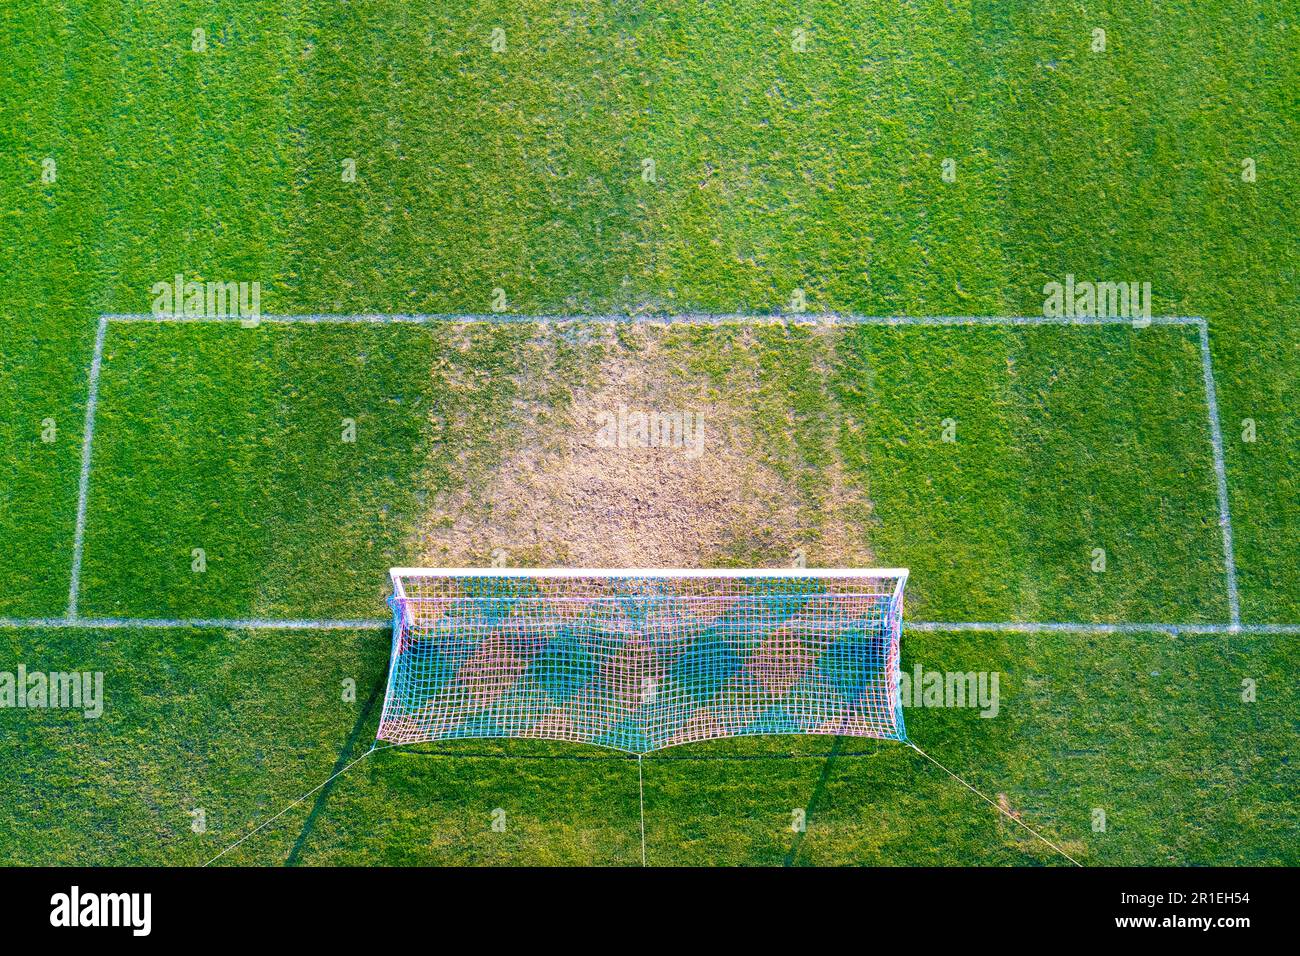 Campo de fútbol con portería y área de penalización desde arriba Foto de stock